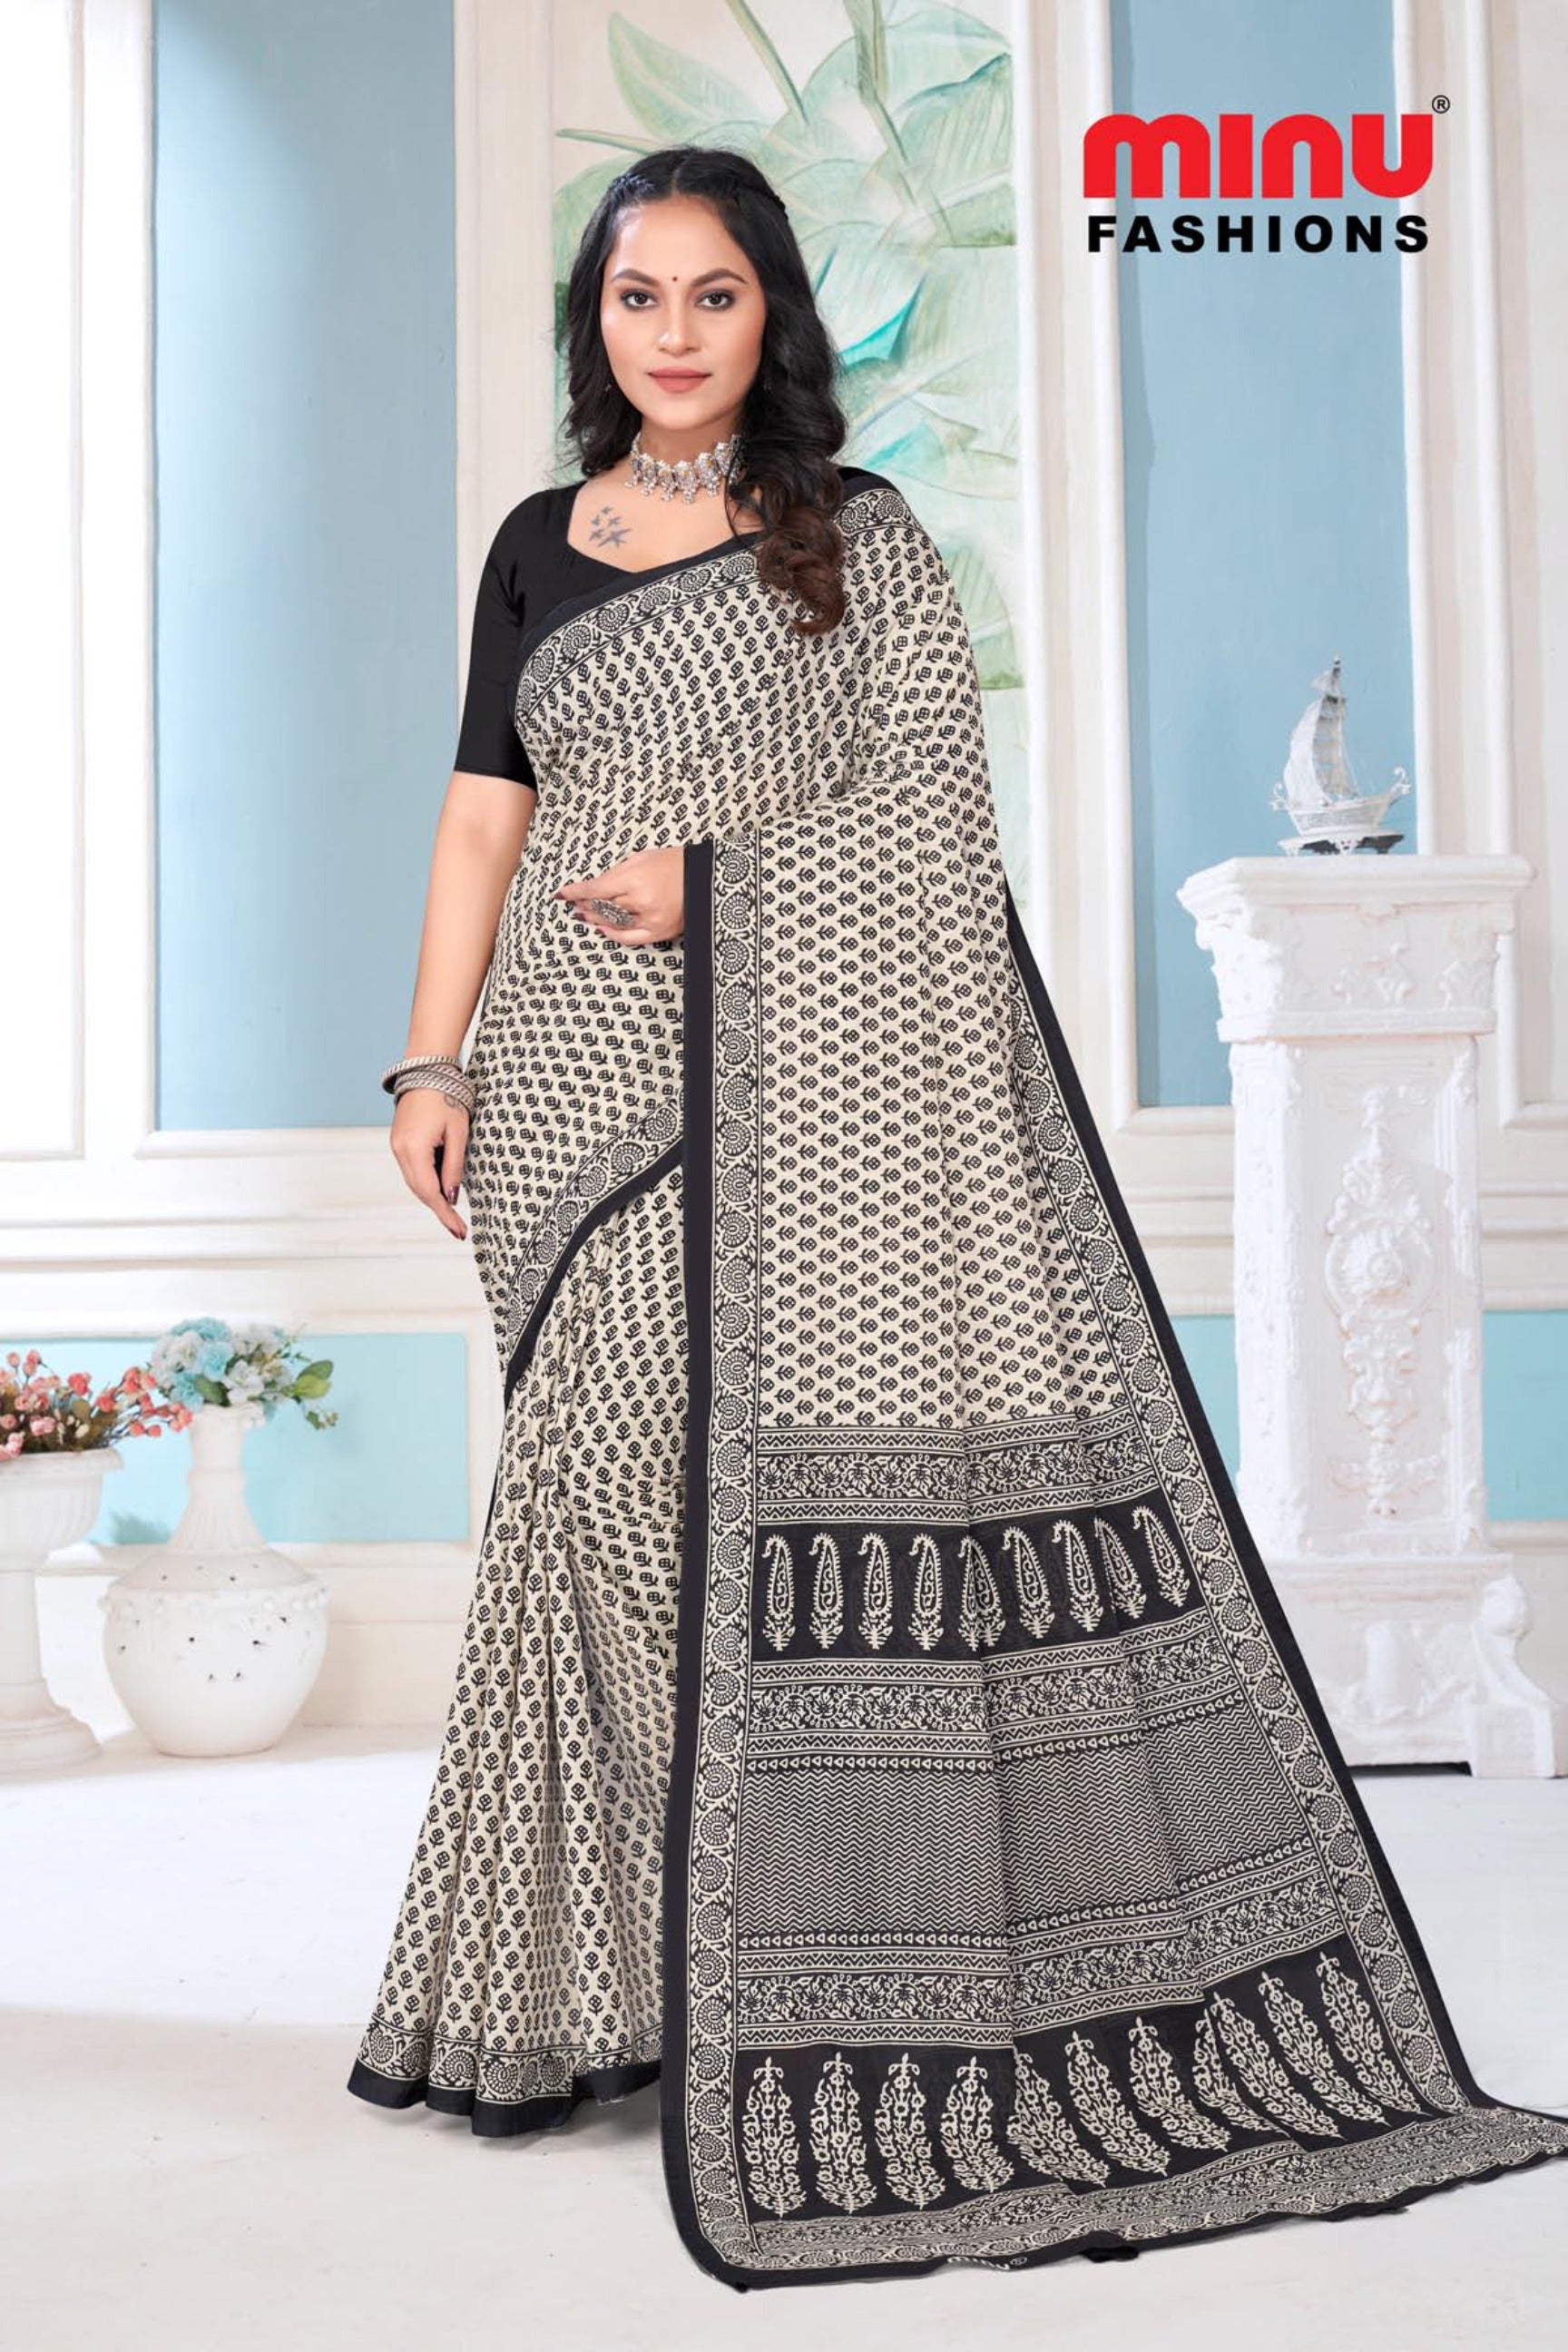 printed cotton sarees from Cotton saree manufacturer